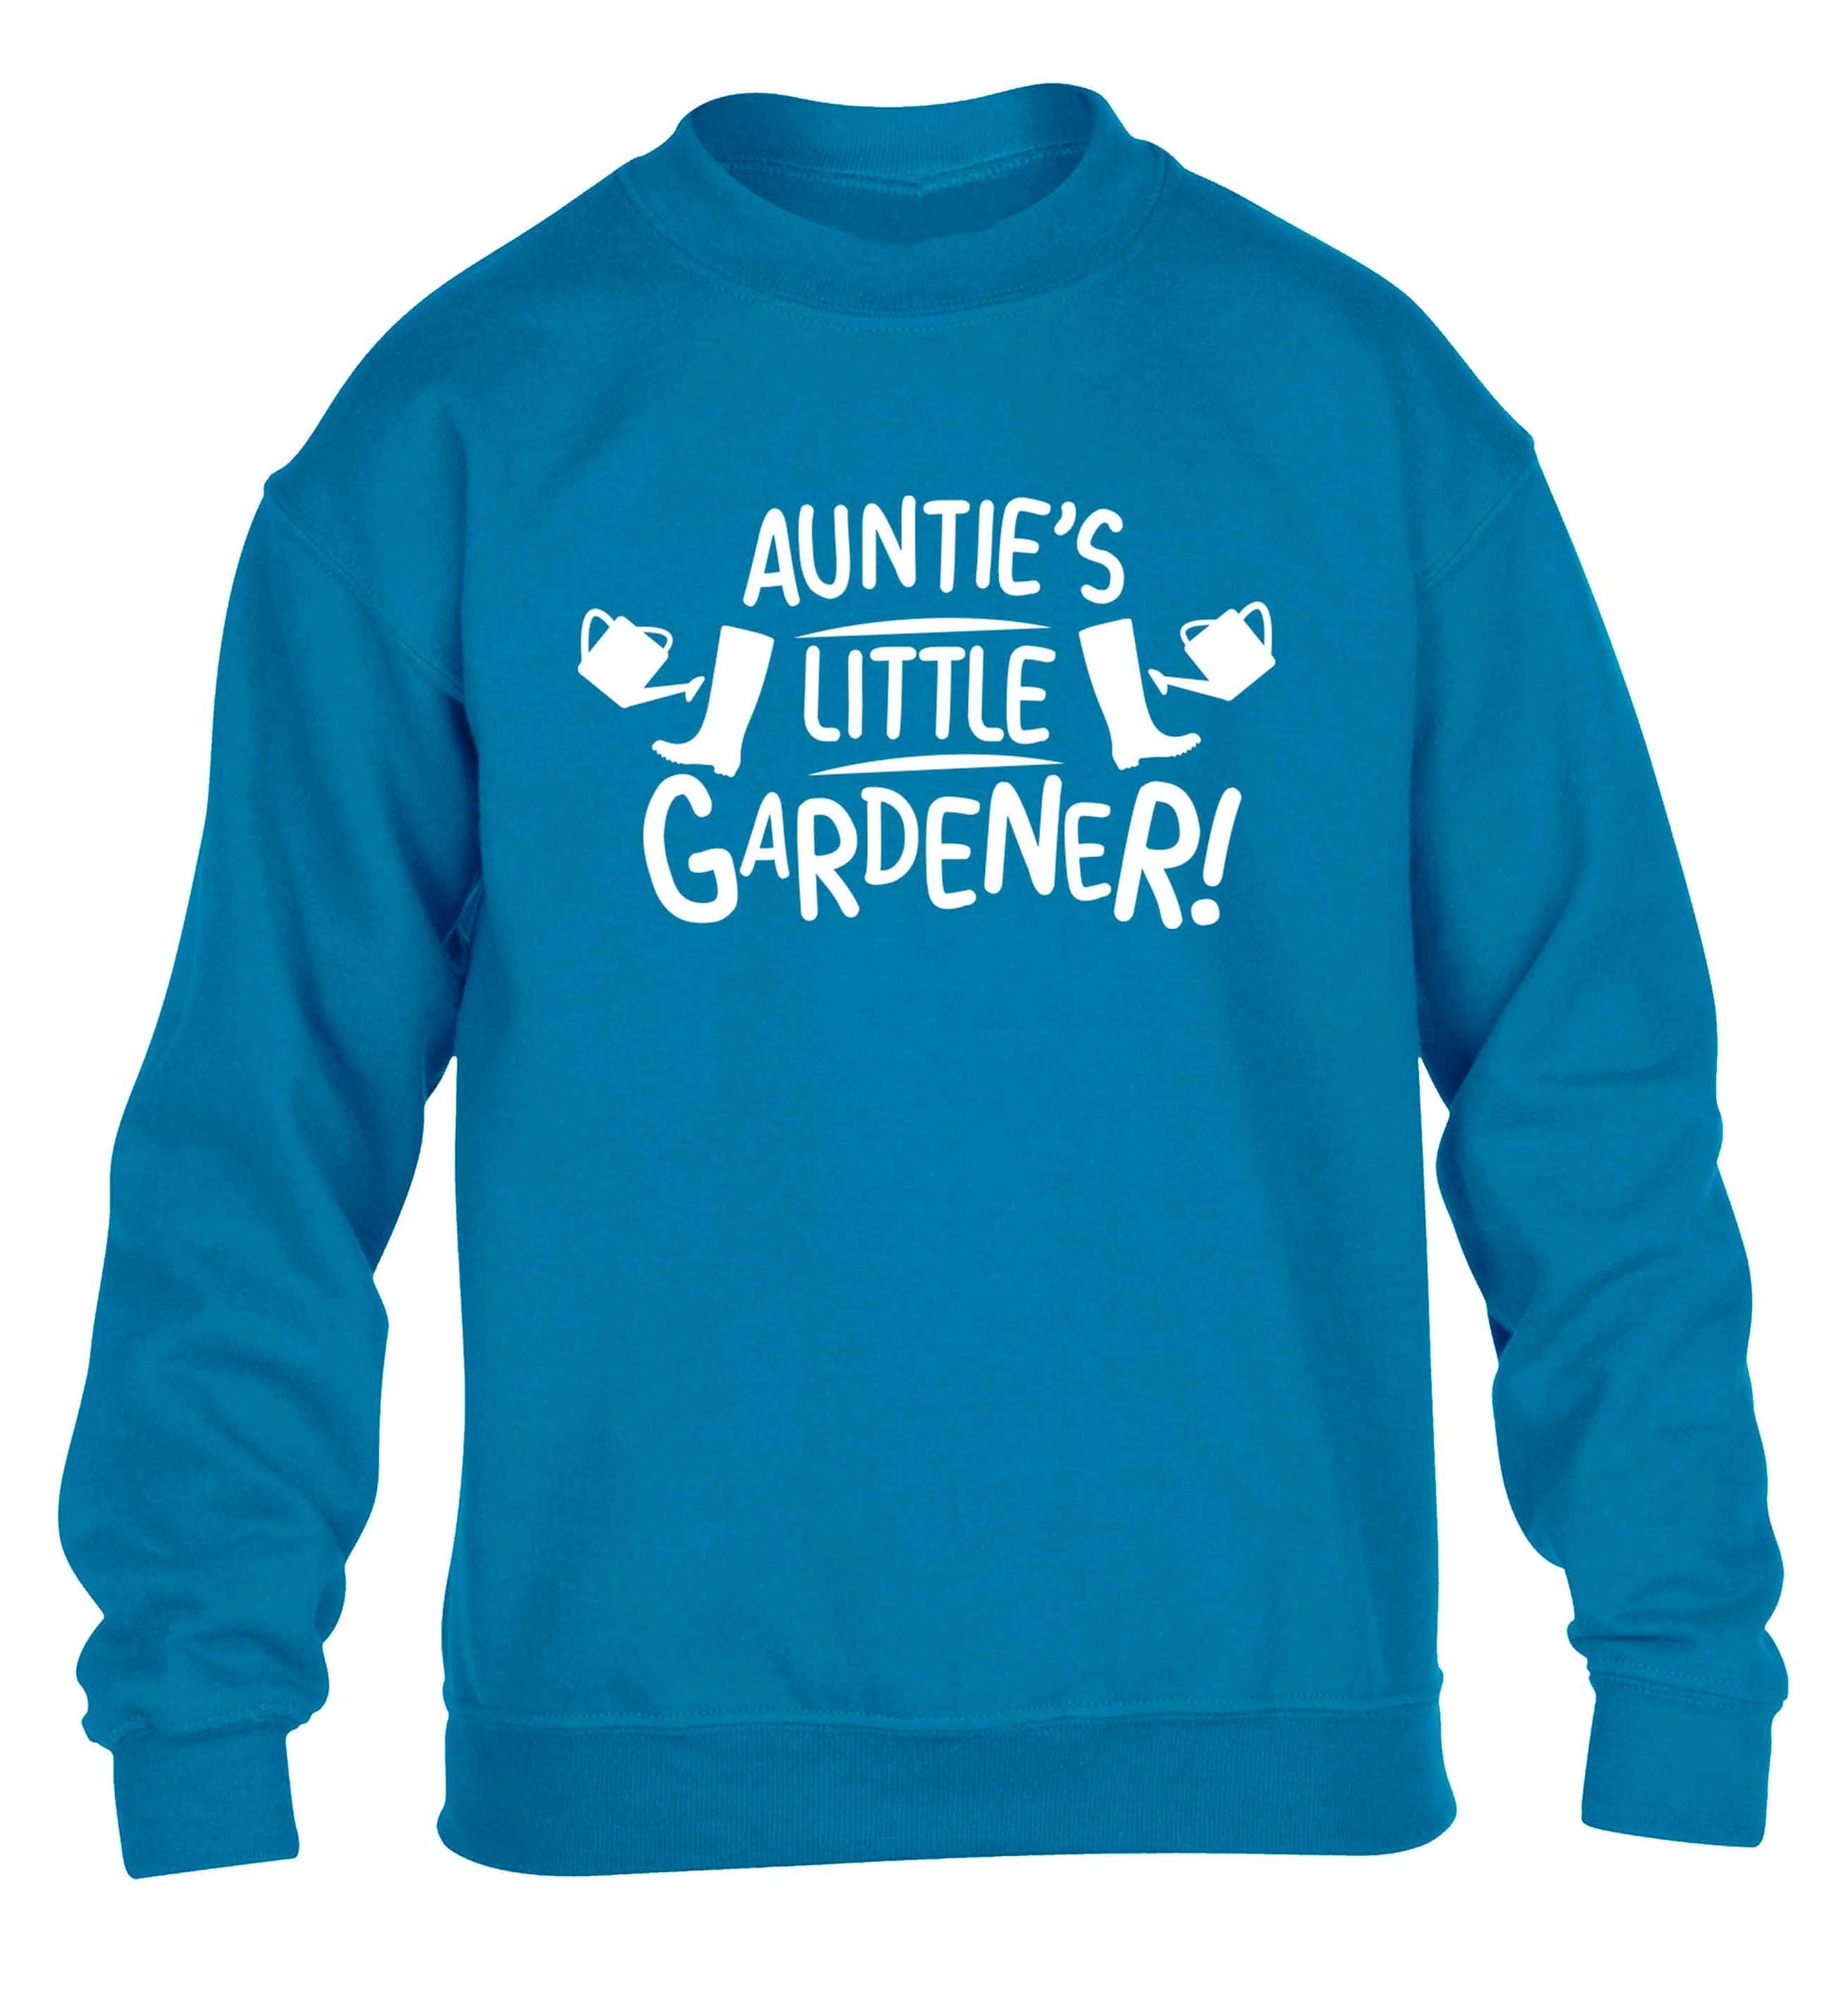 Auntie's little gardener children's blue sweater 12-13 Years